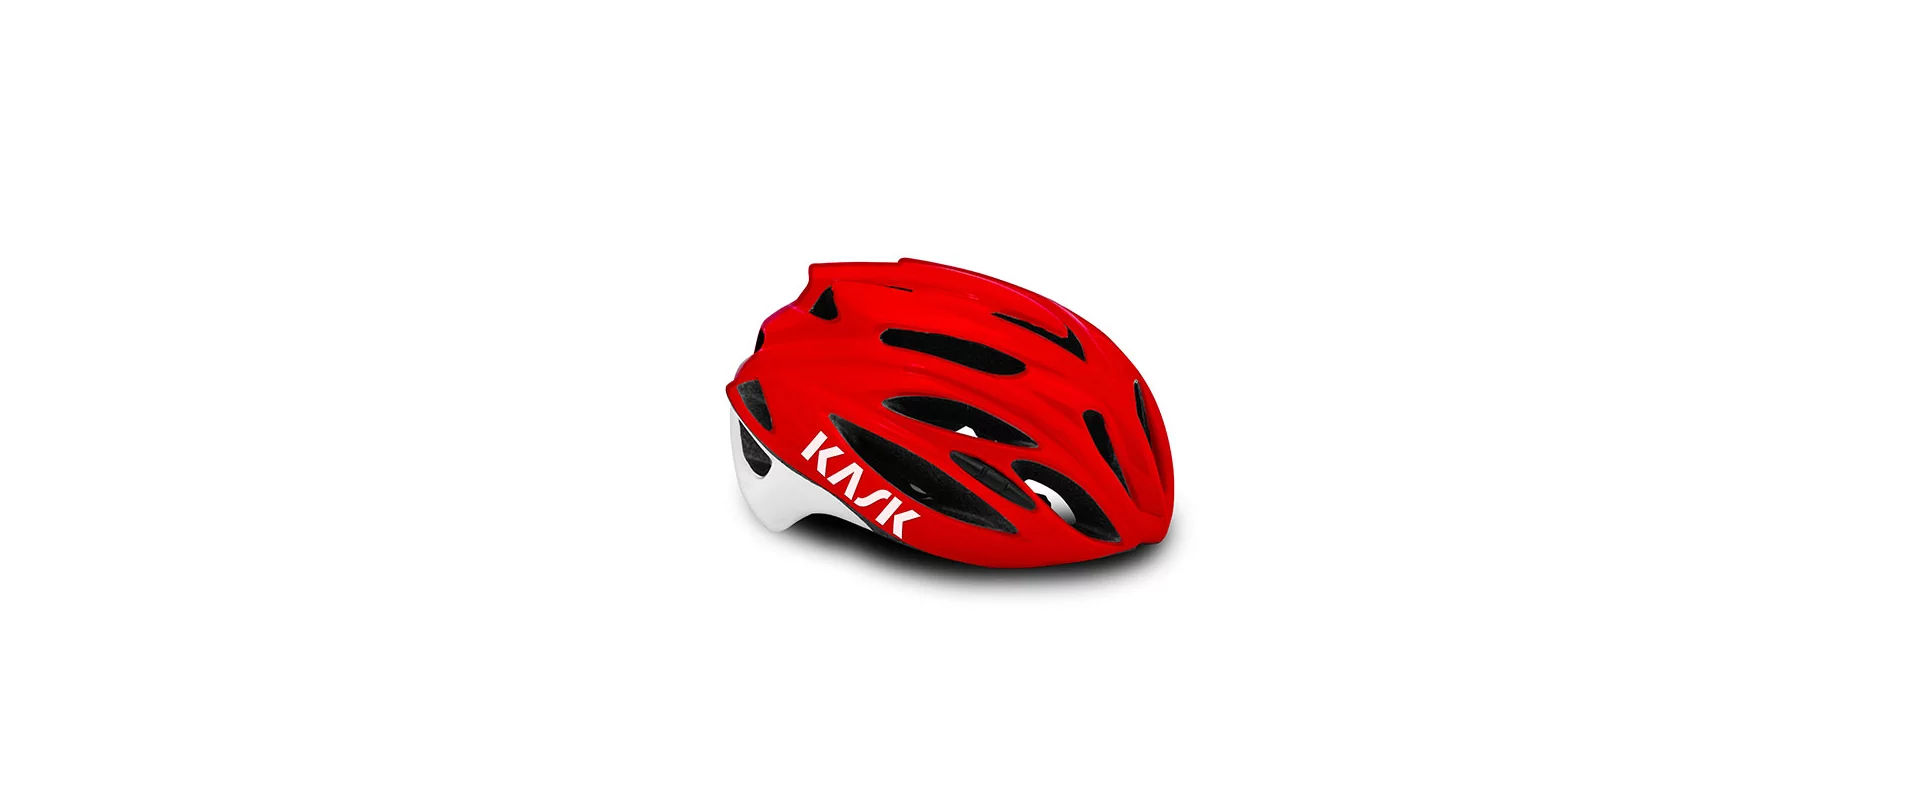 Kask RAPIDO / Шлем велосипедный